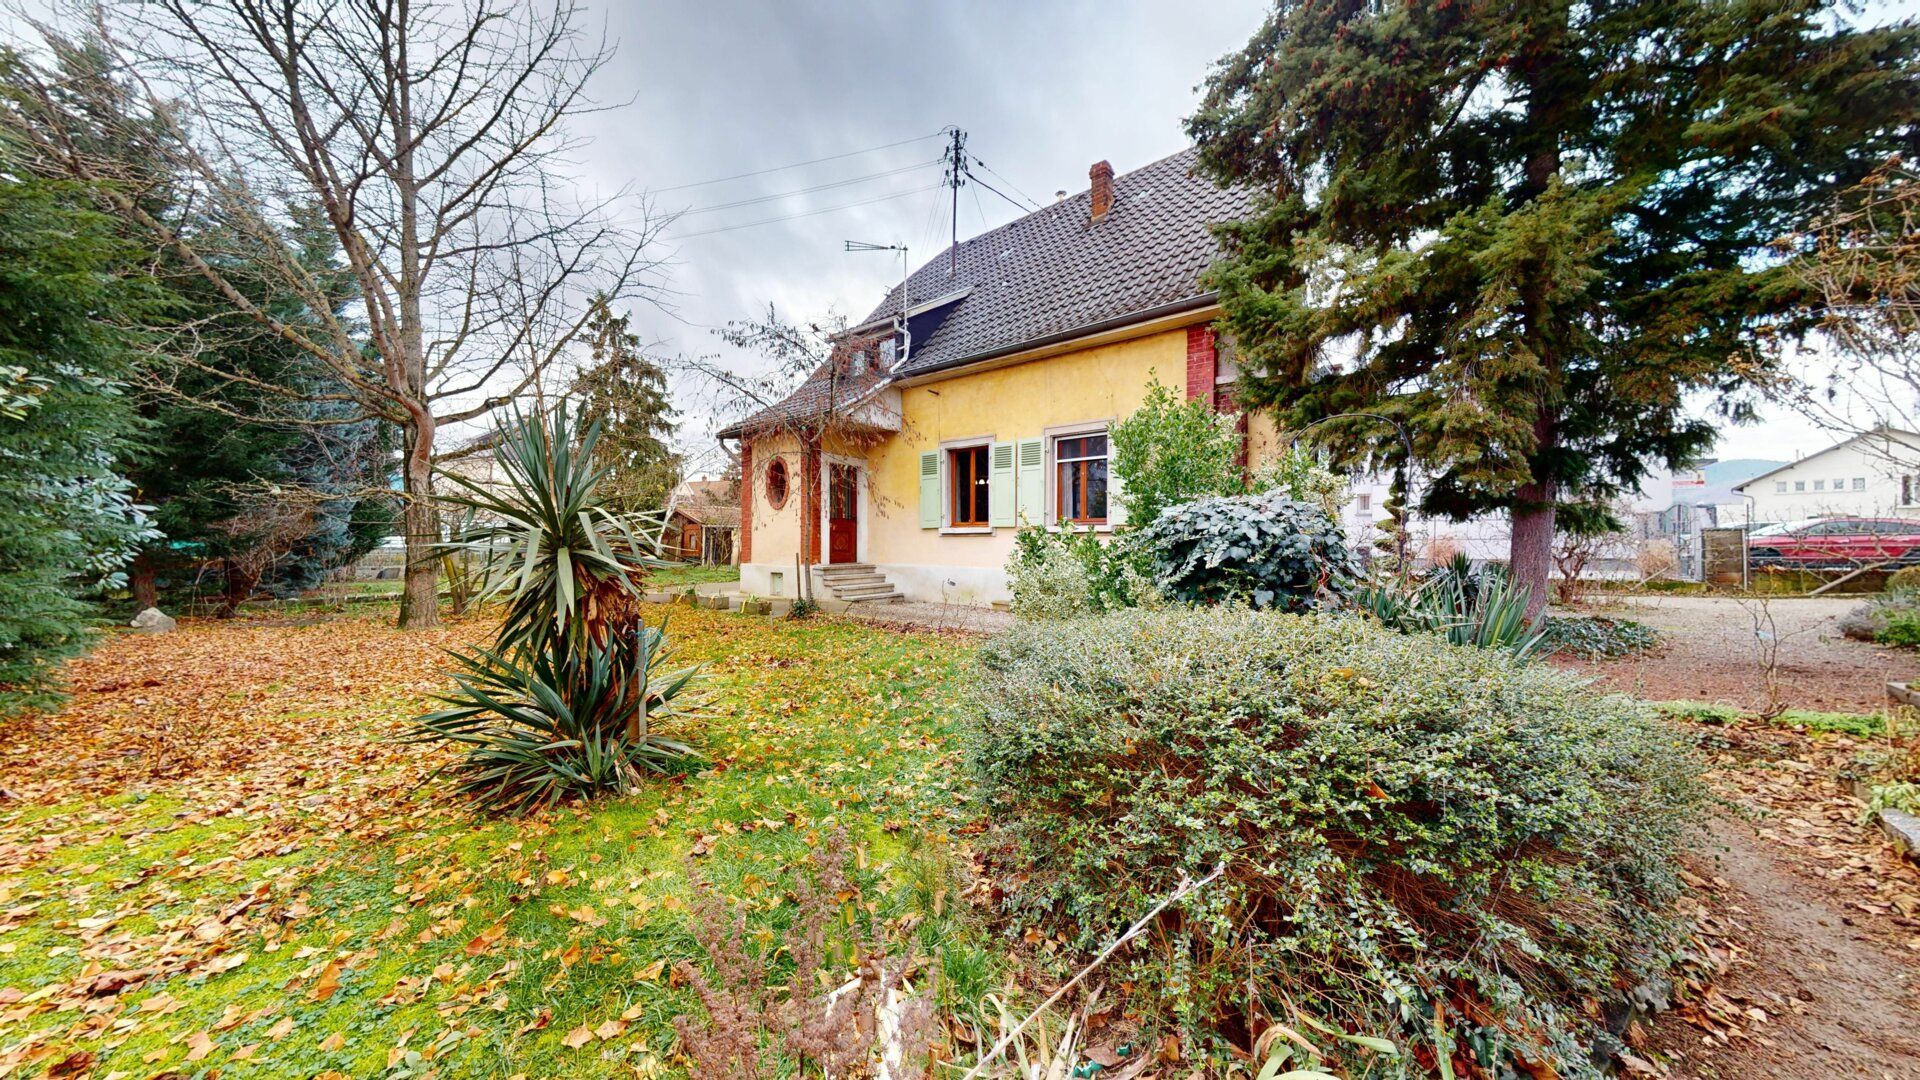 Maison à vendre 6 134m2 à Ingersheim vignette-2